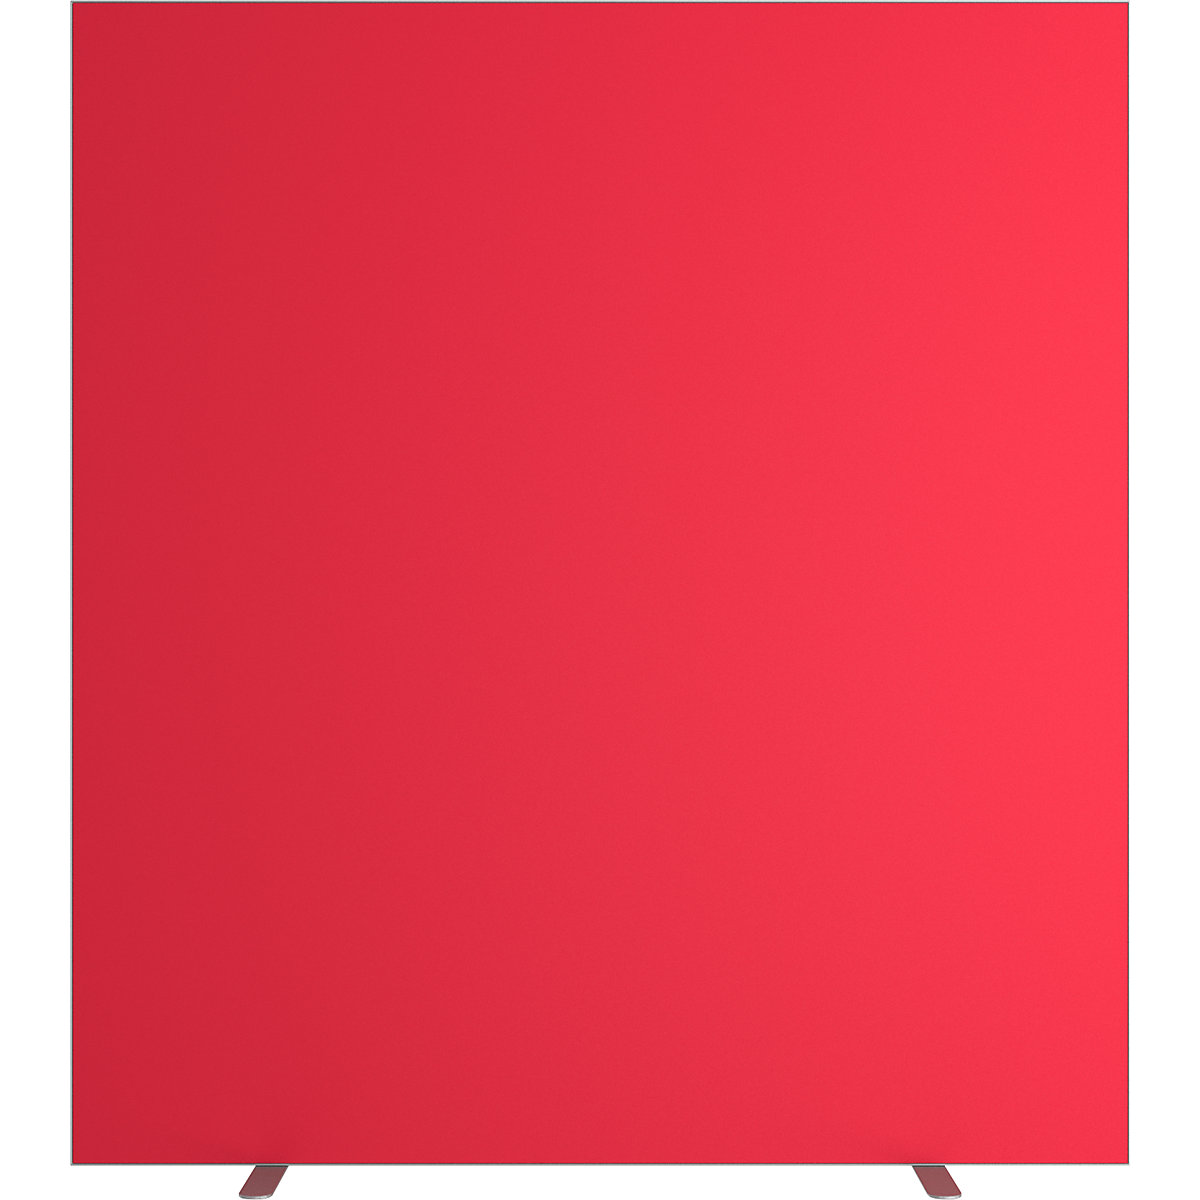 Pared separadora easyScreen, monocolor, con aislamiento acústico, rojo, anchura 1600 mm-15